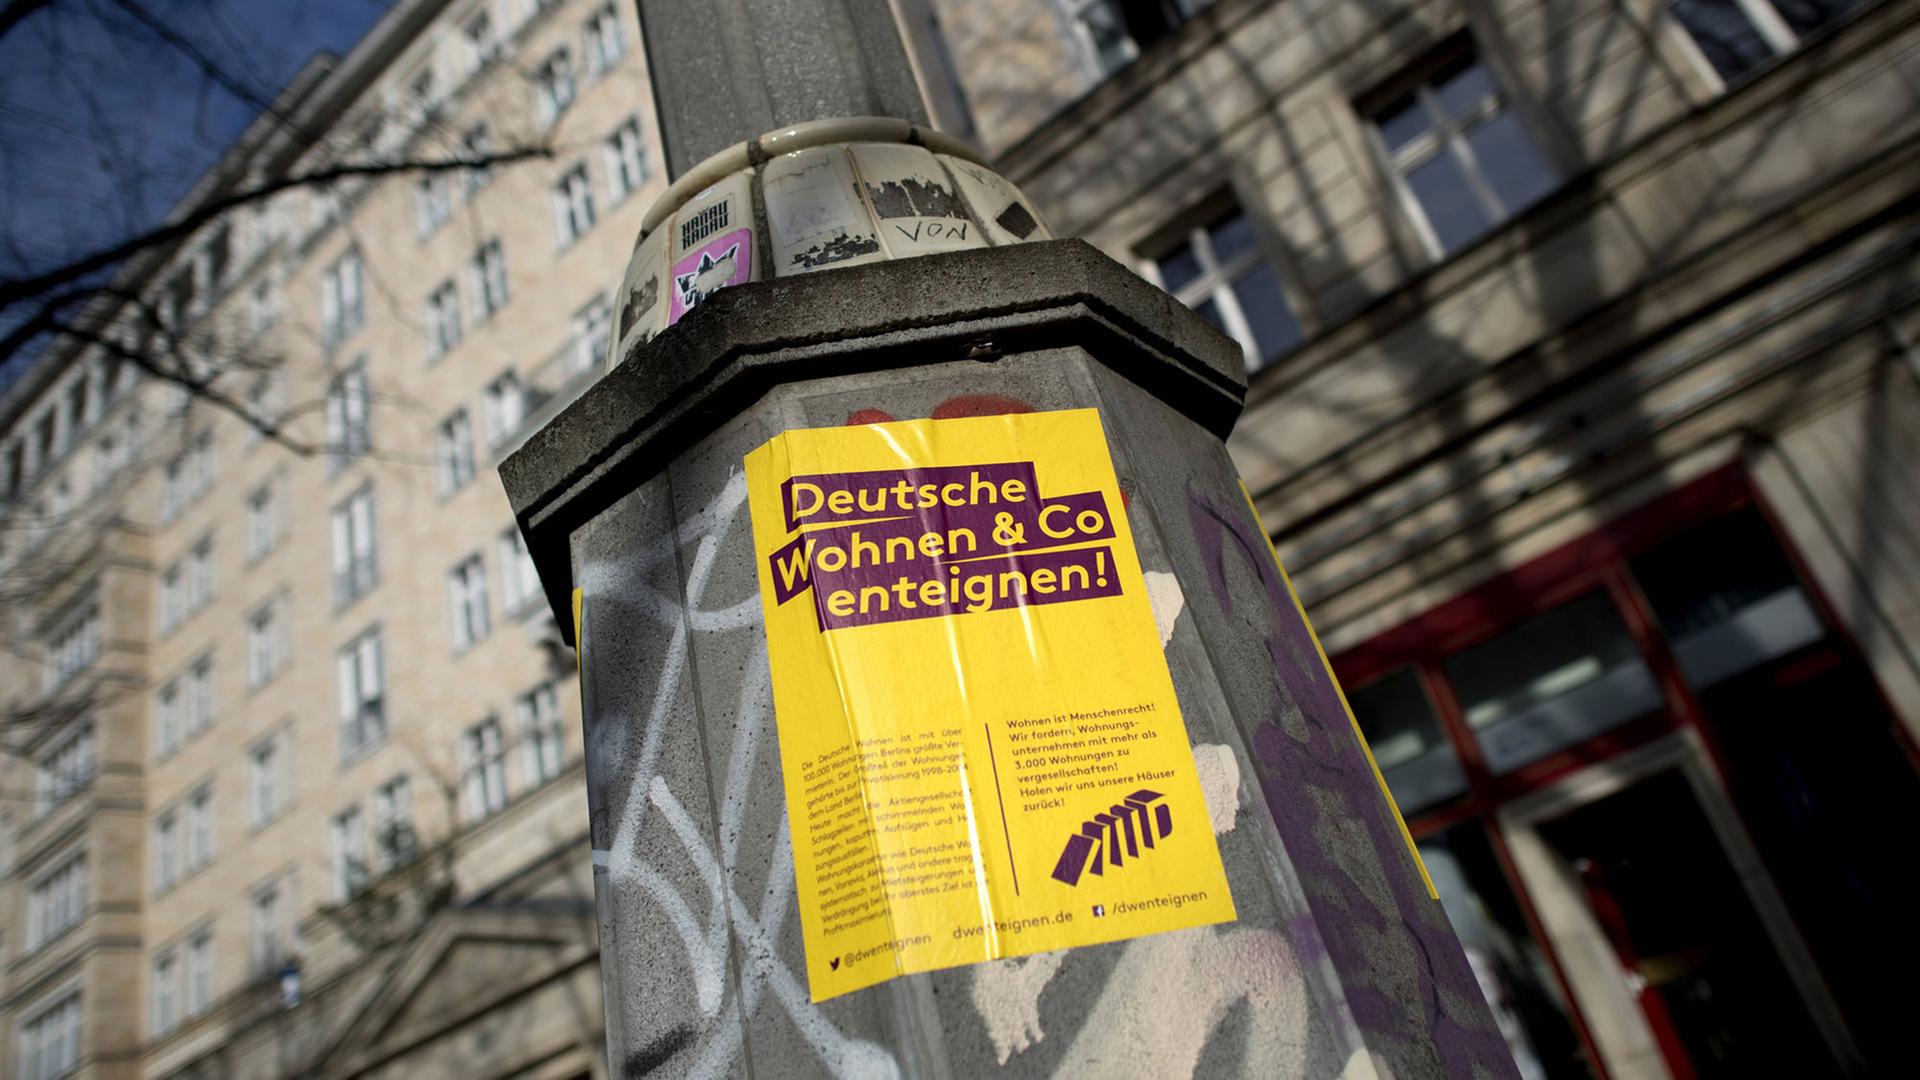 Protestplakat "Deutsche Wohnen und Co enteignen" an einem Wohnhaus an der Karl-Marx-Allee in Berlin-Friedrichshain.